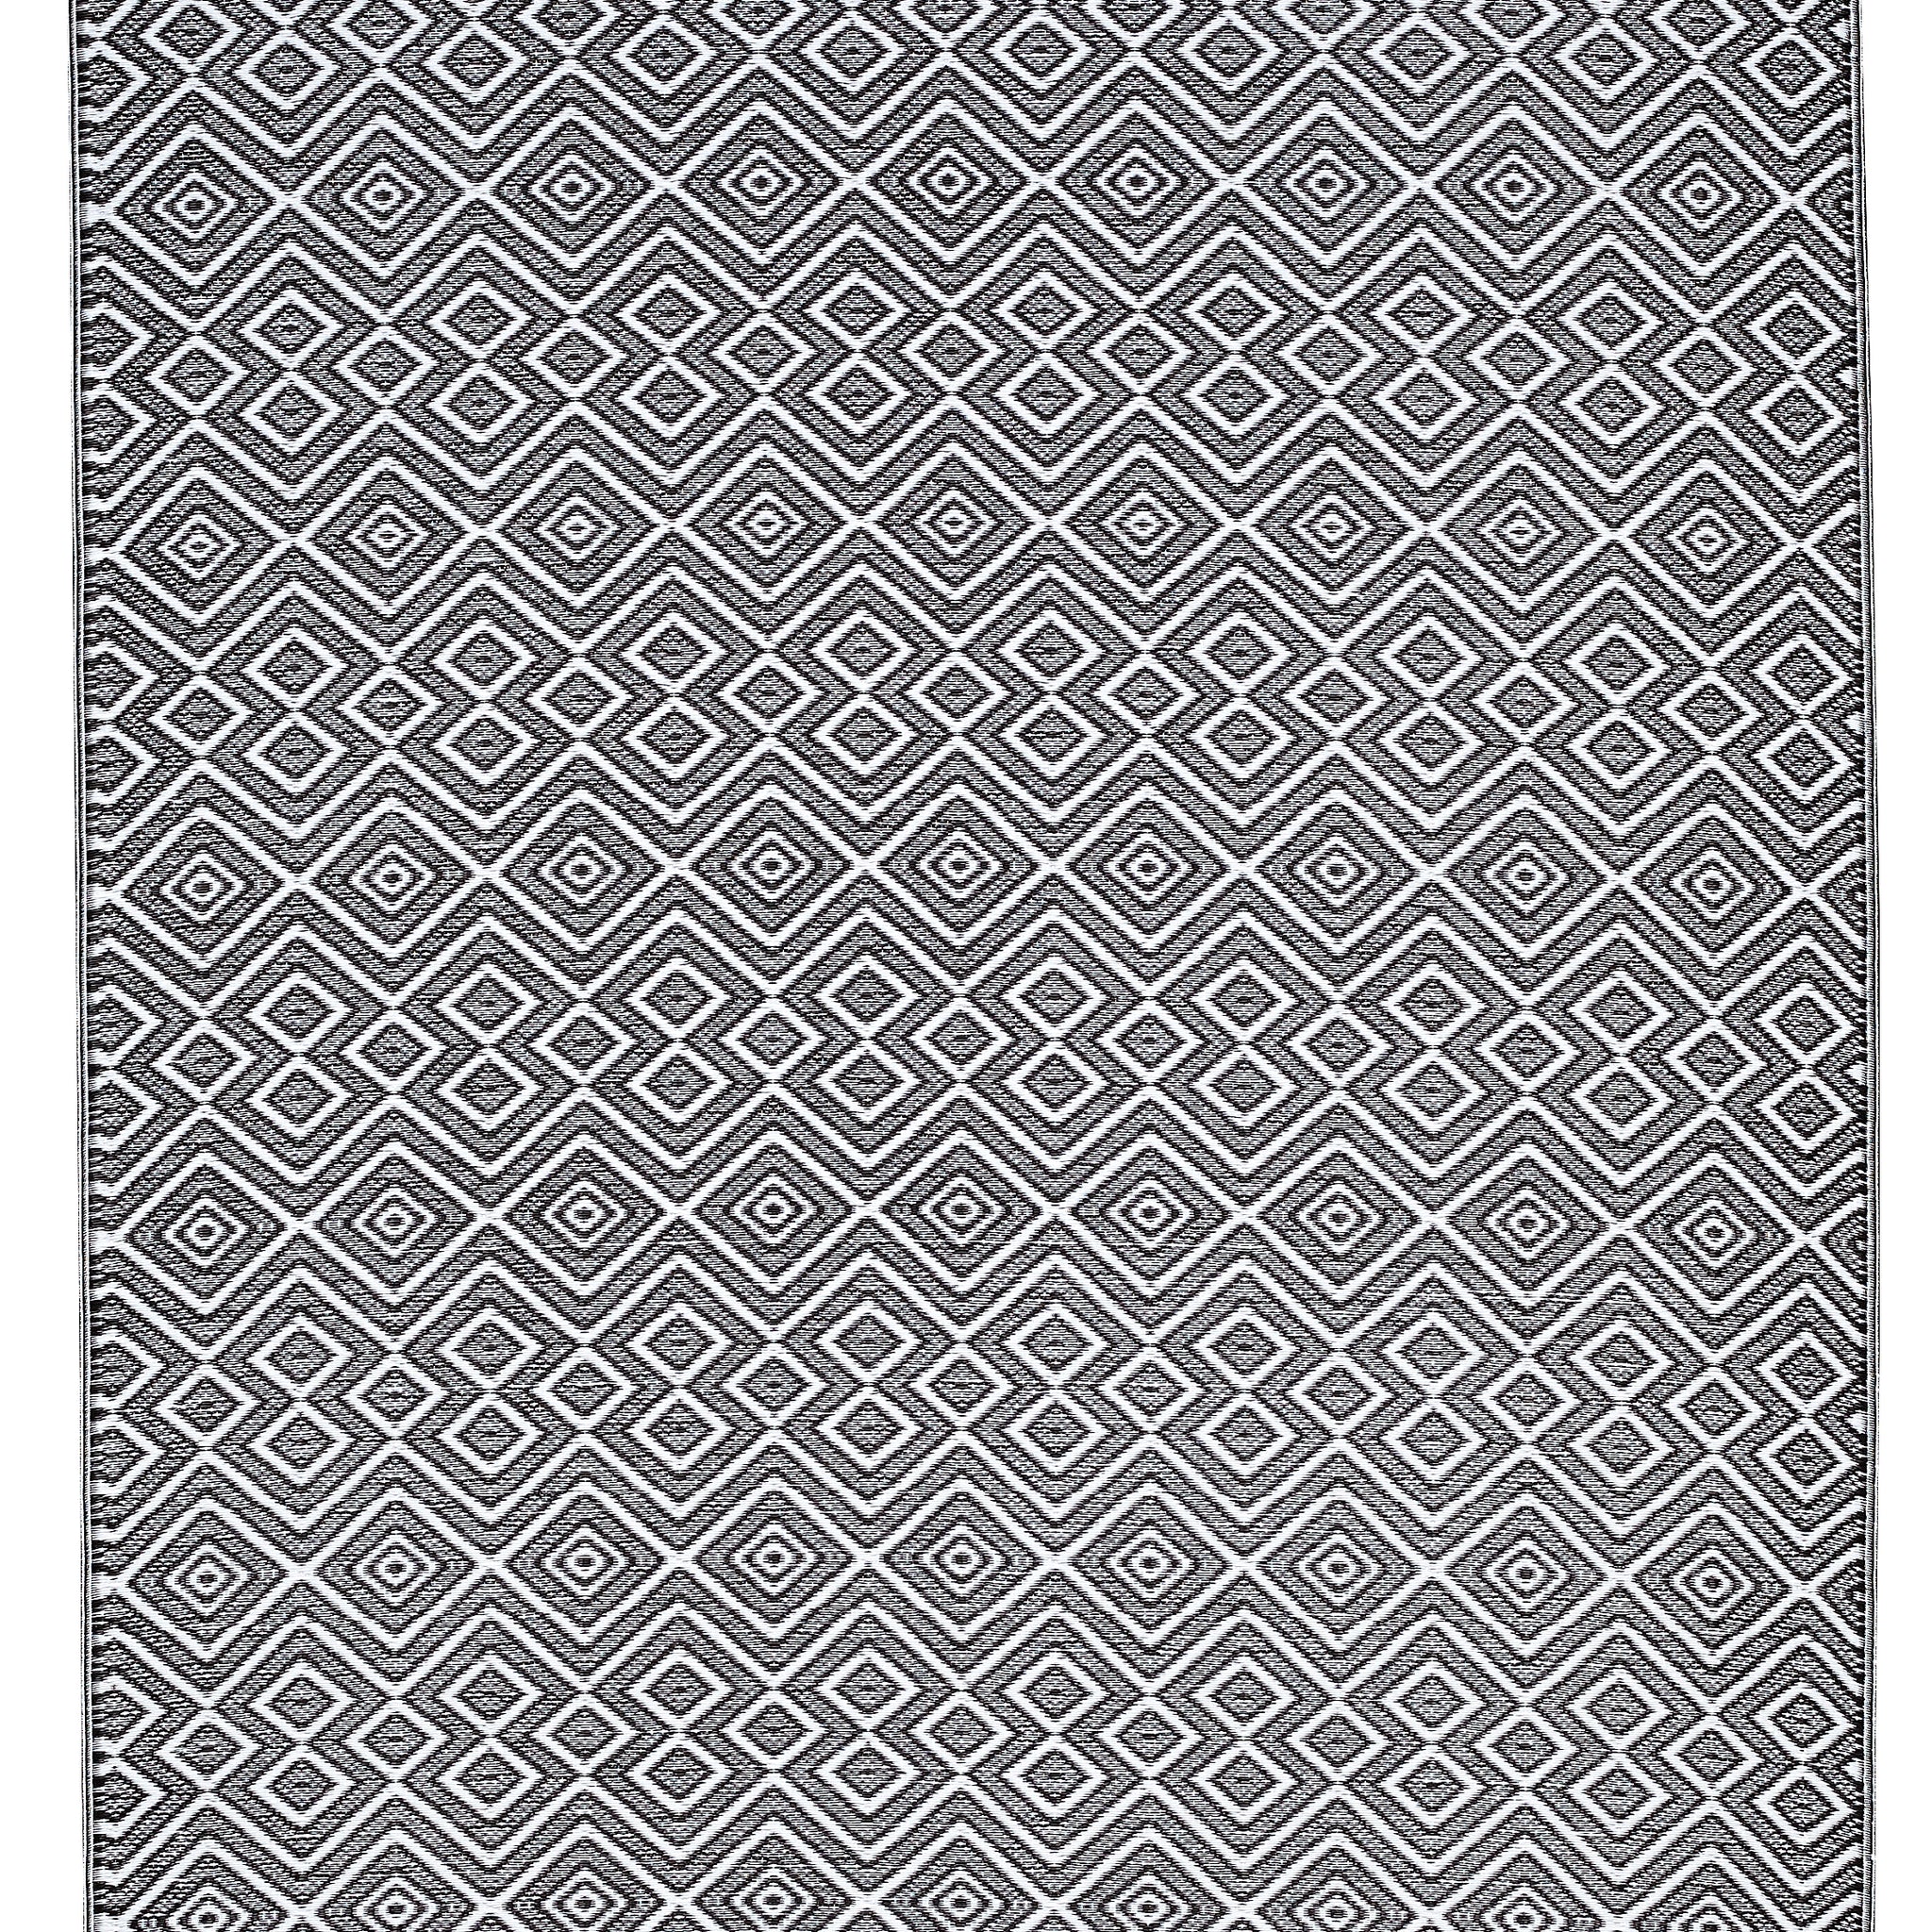 Indoor/Outdoor Black White Reversible Rug Outdoor Area Rug, Outdoor carpet, outdoor mat, picnic mat